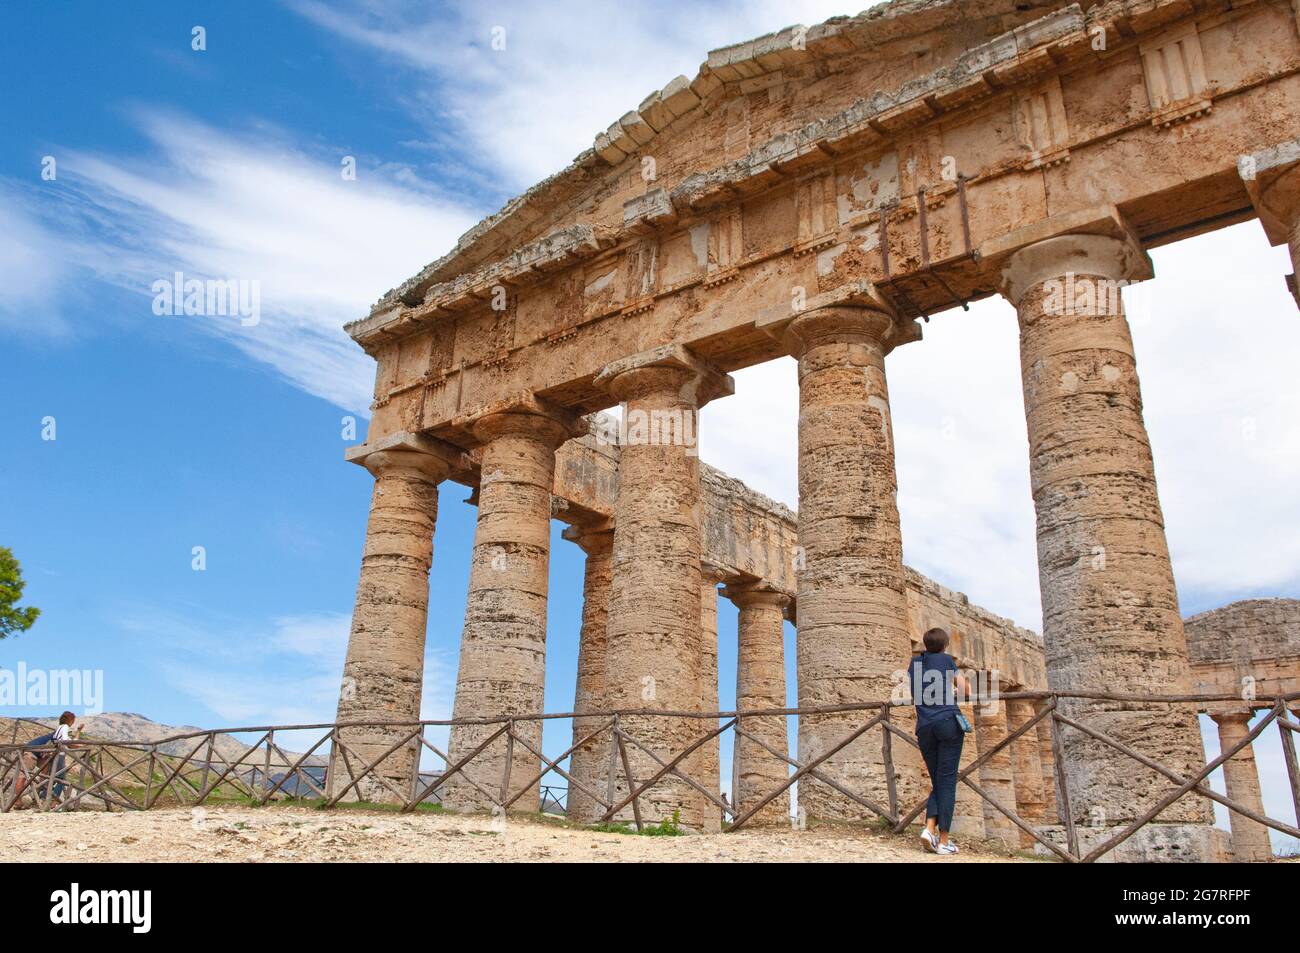 Ancien temple grec dorique de Segesta, paysage à Segesta, province de Trapani, Sicile, Italie Banque D'Images